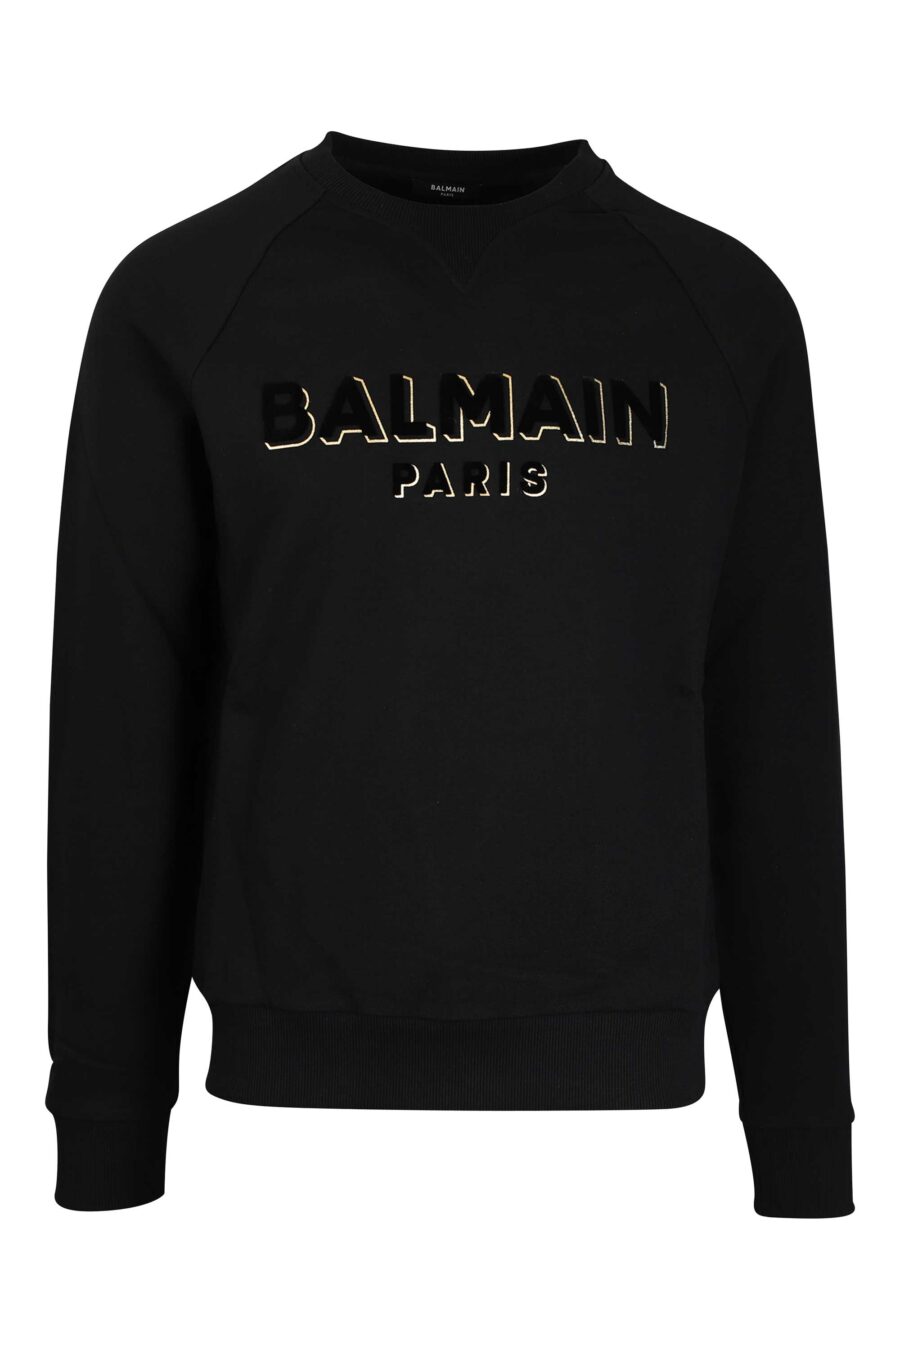 Schwarzes Sweatshirt mit schwarzem Samt Maxilogue mit Gold - 3615884199558